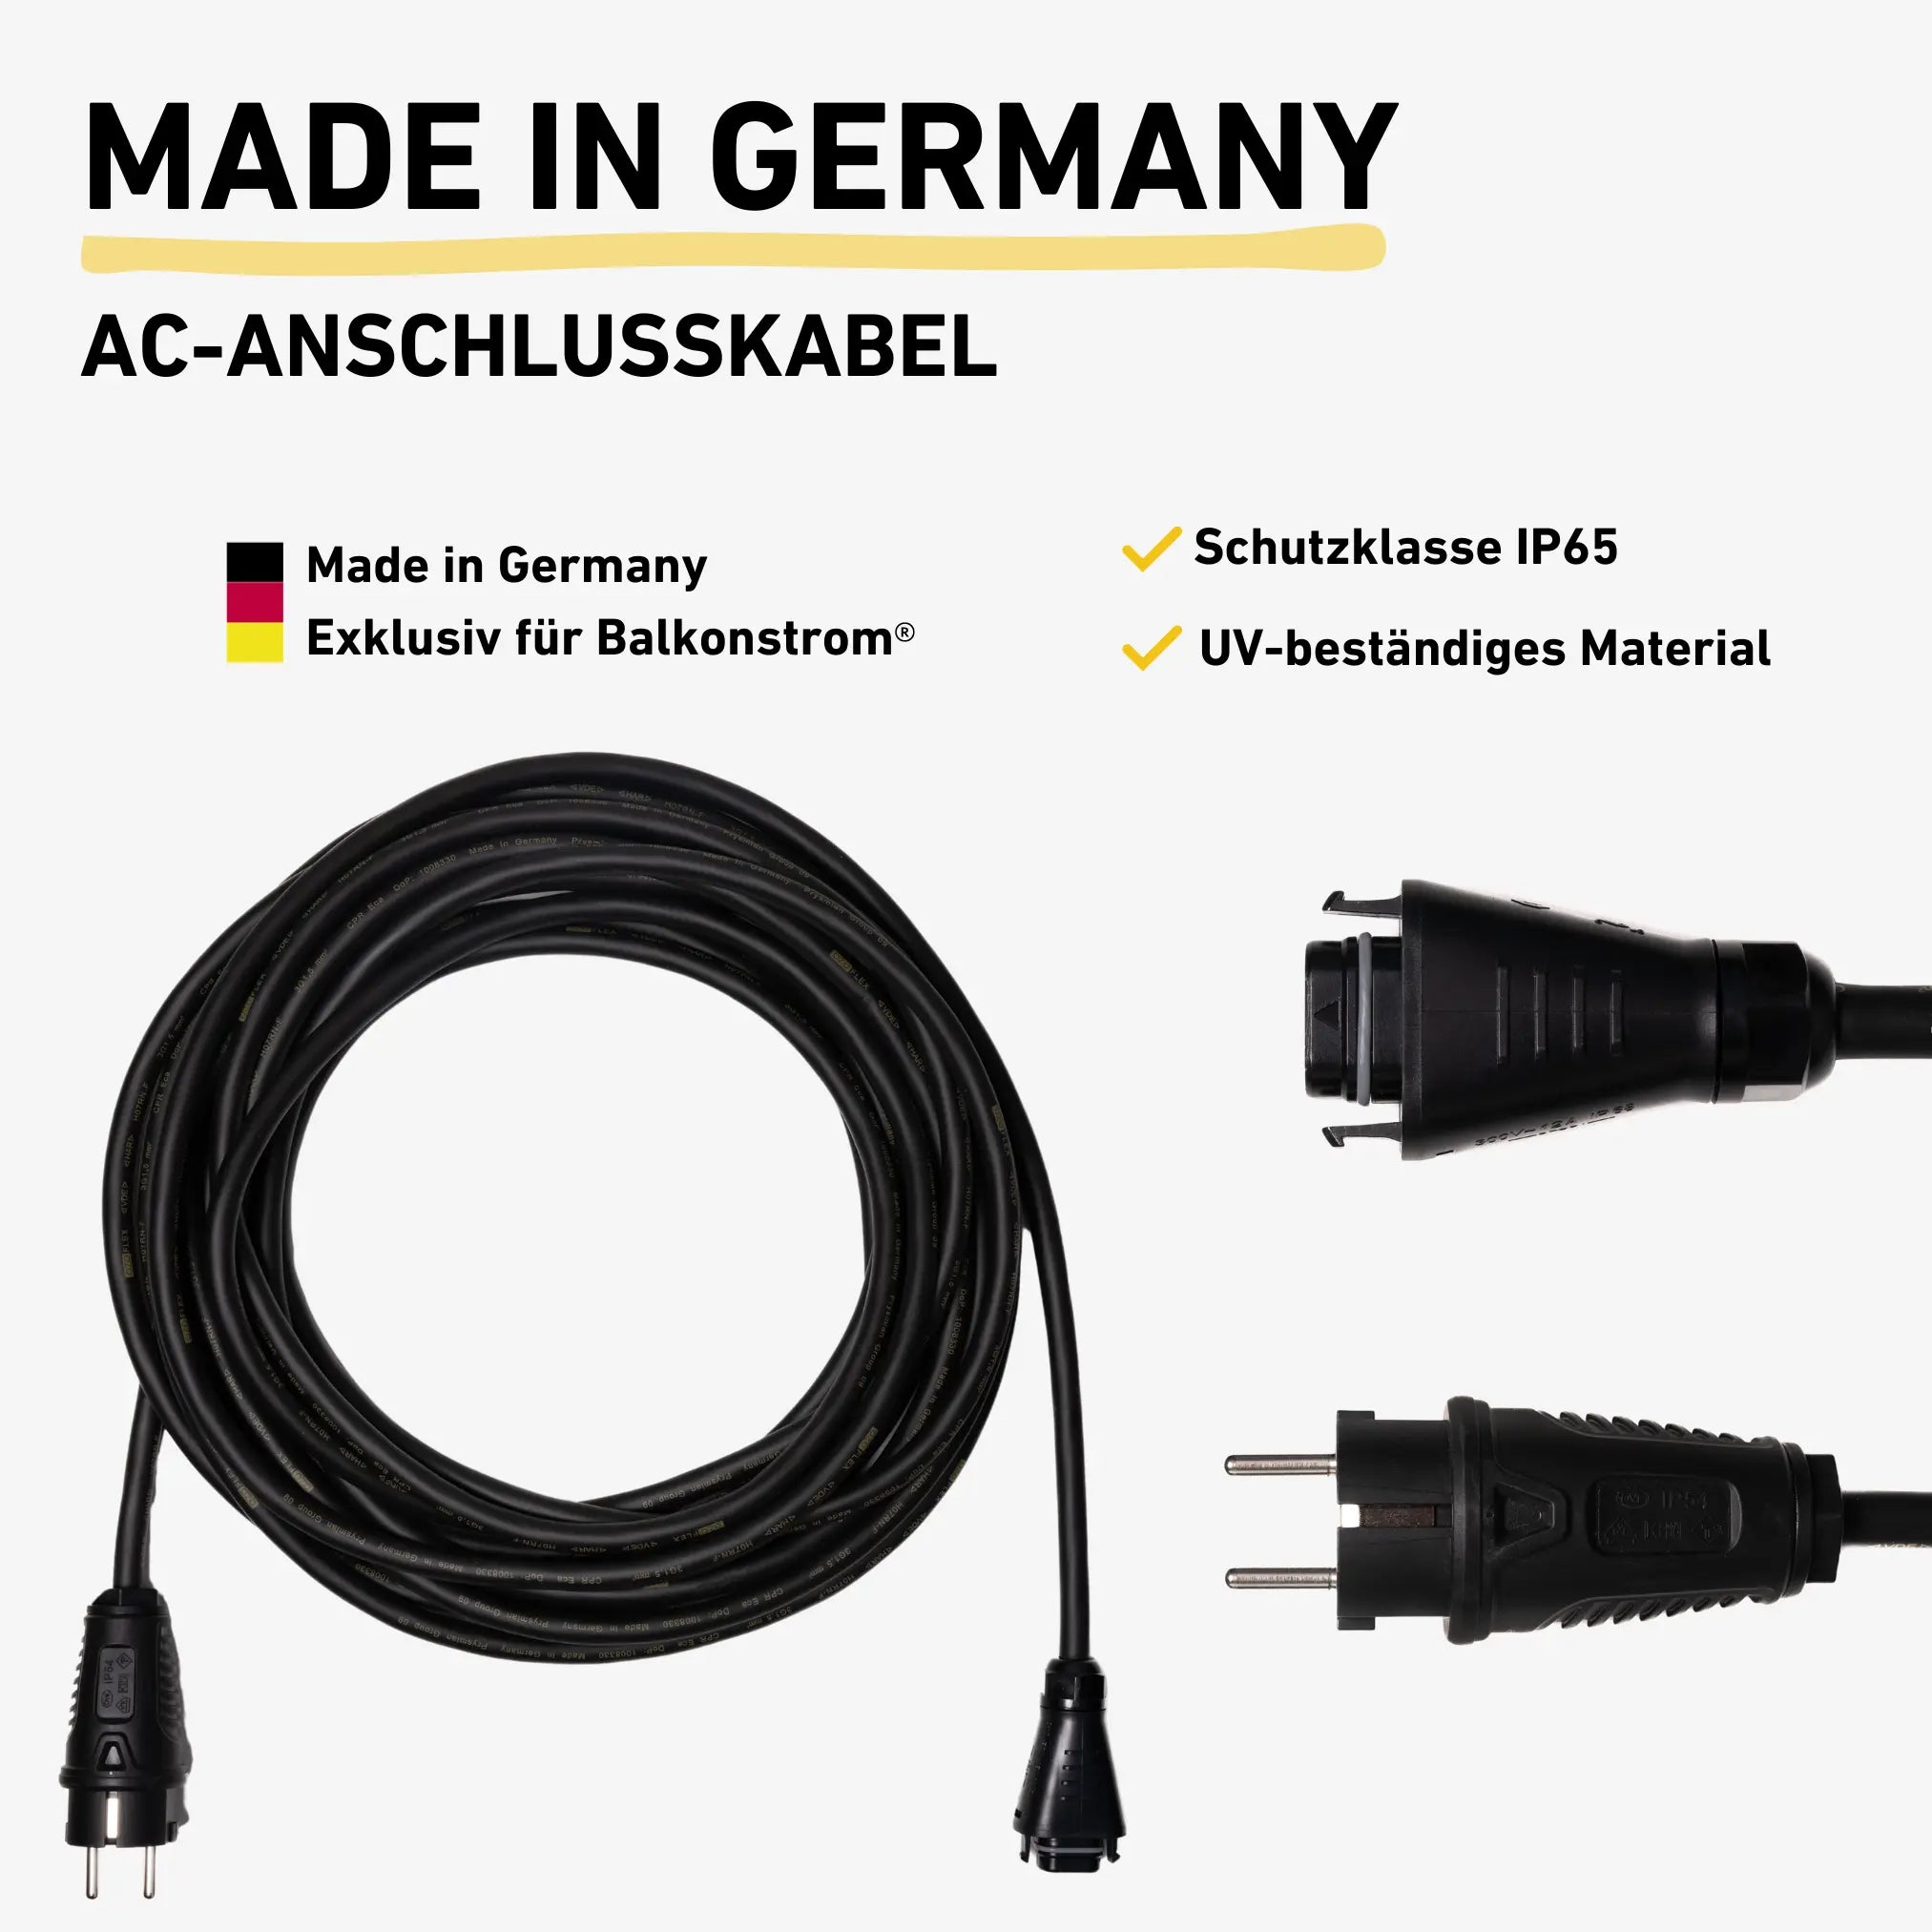 AC-Anschlusskabel Made in Germany Stecker Detailbild